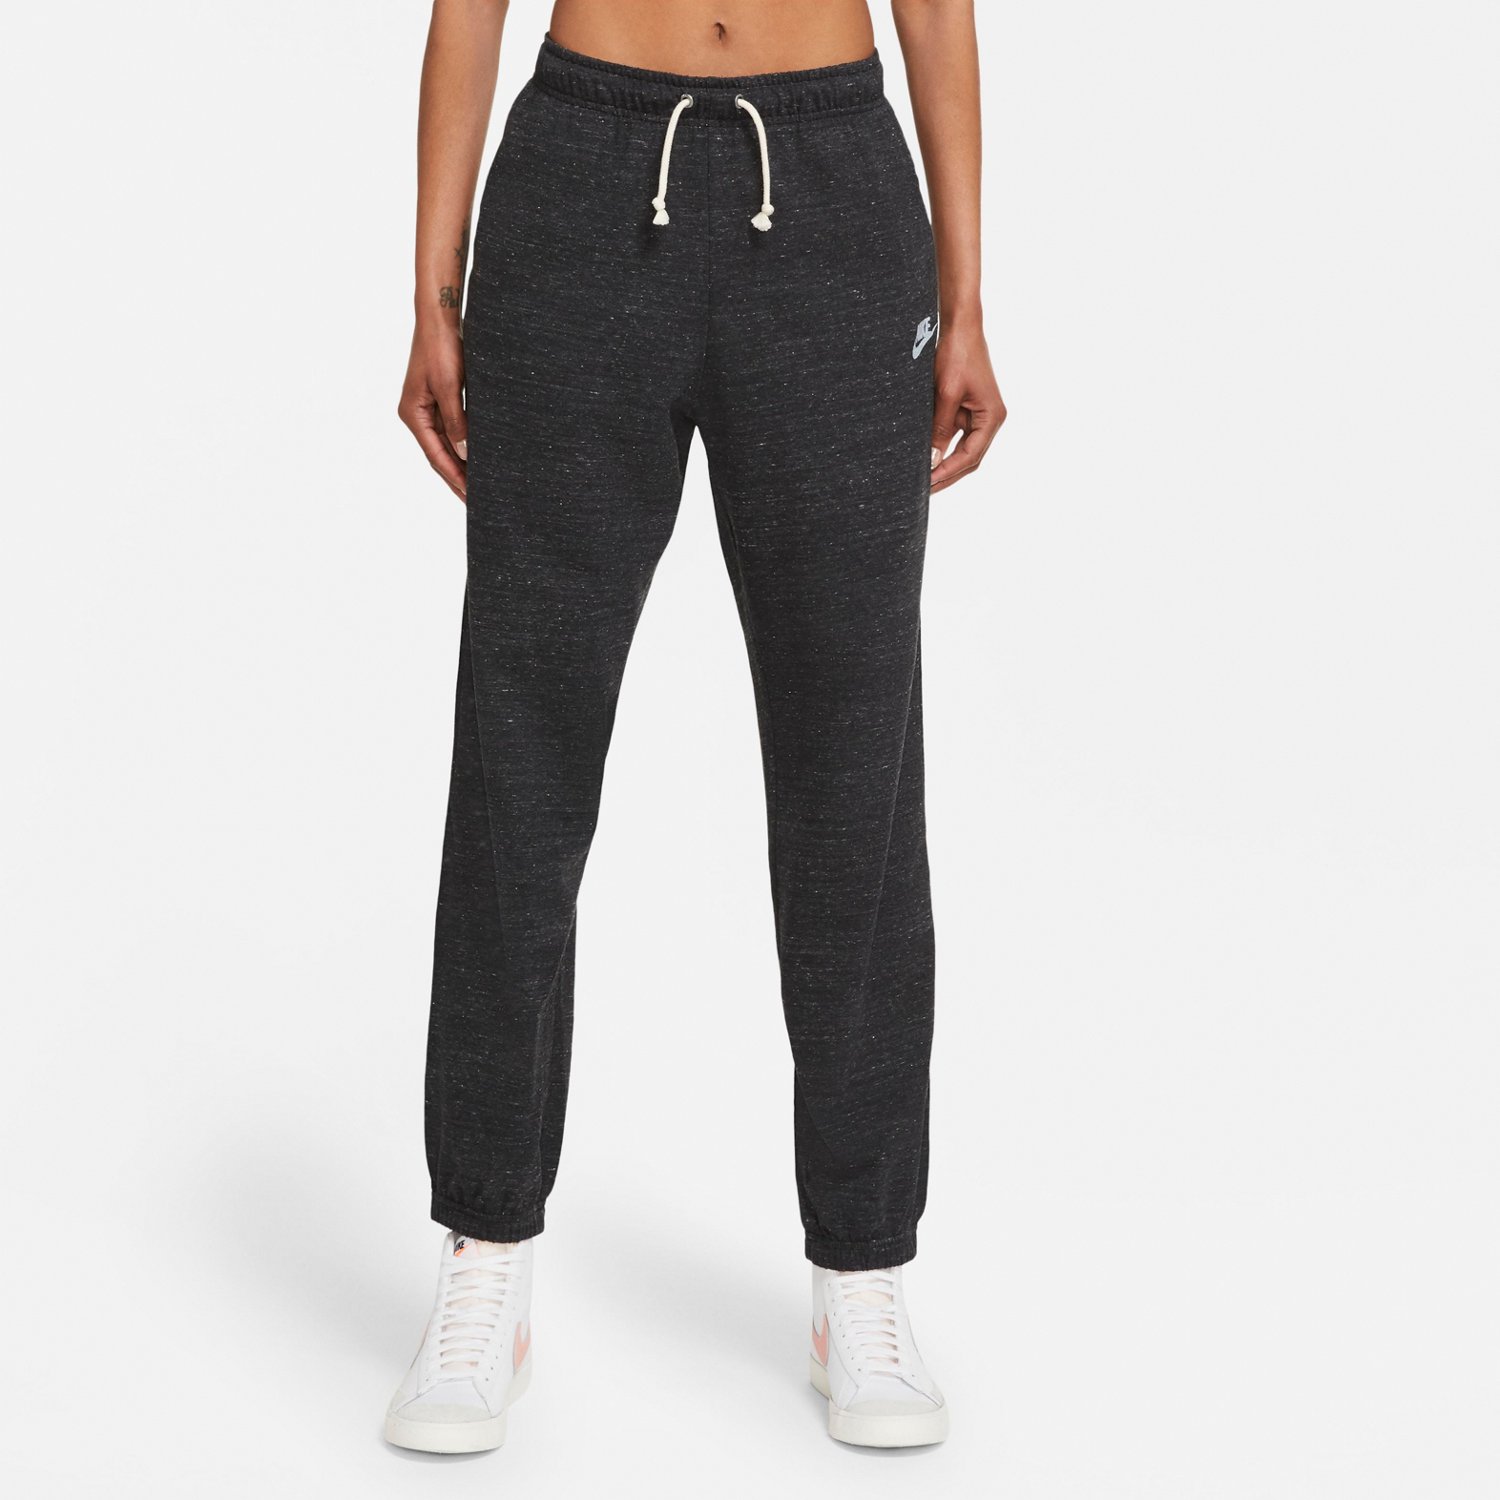  Nike Women's Sportswear Gym Vintage Pants, Black/(Sail